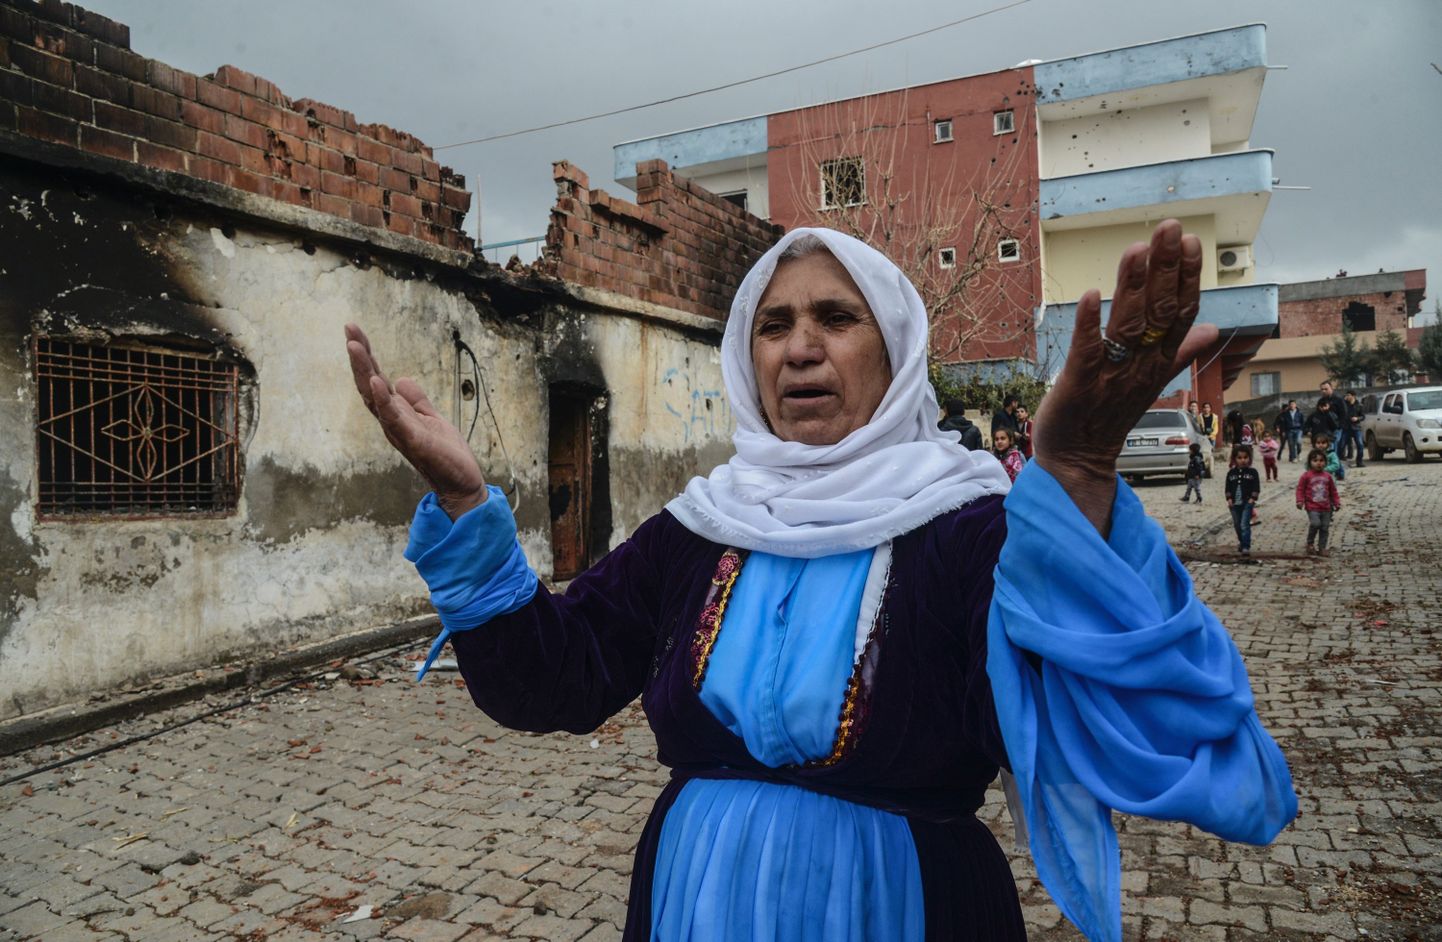 Hävinenud hoone Silopi linnas Türgis, kus toimuvad igapäevaselt Türgi armee ja kurdivõitlejate kokkupõrked.